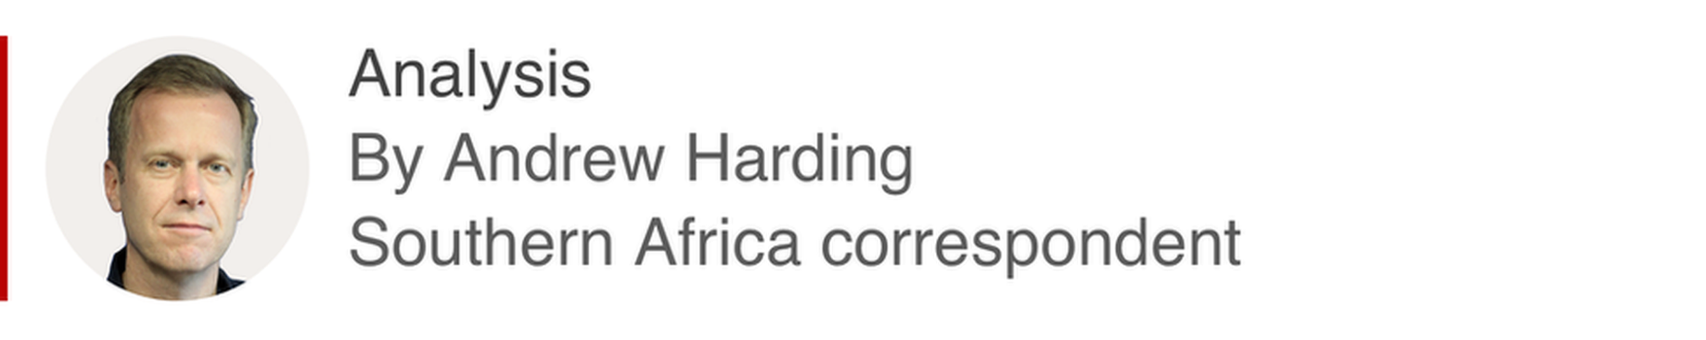 Анализатор Эндрю Хардинга, корреспондента из Южной Африки